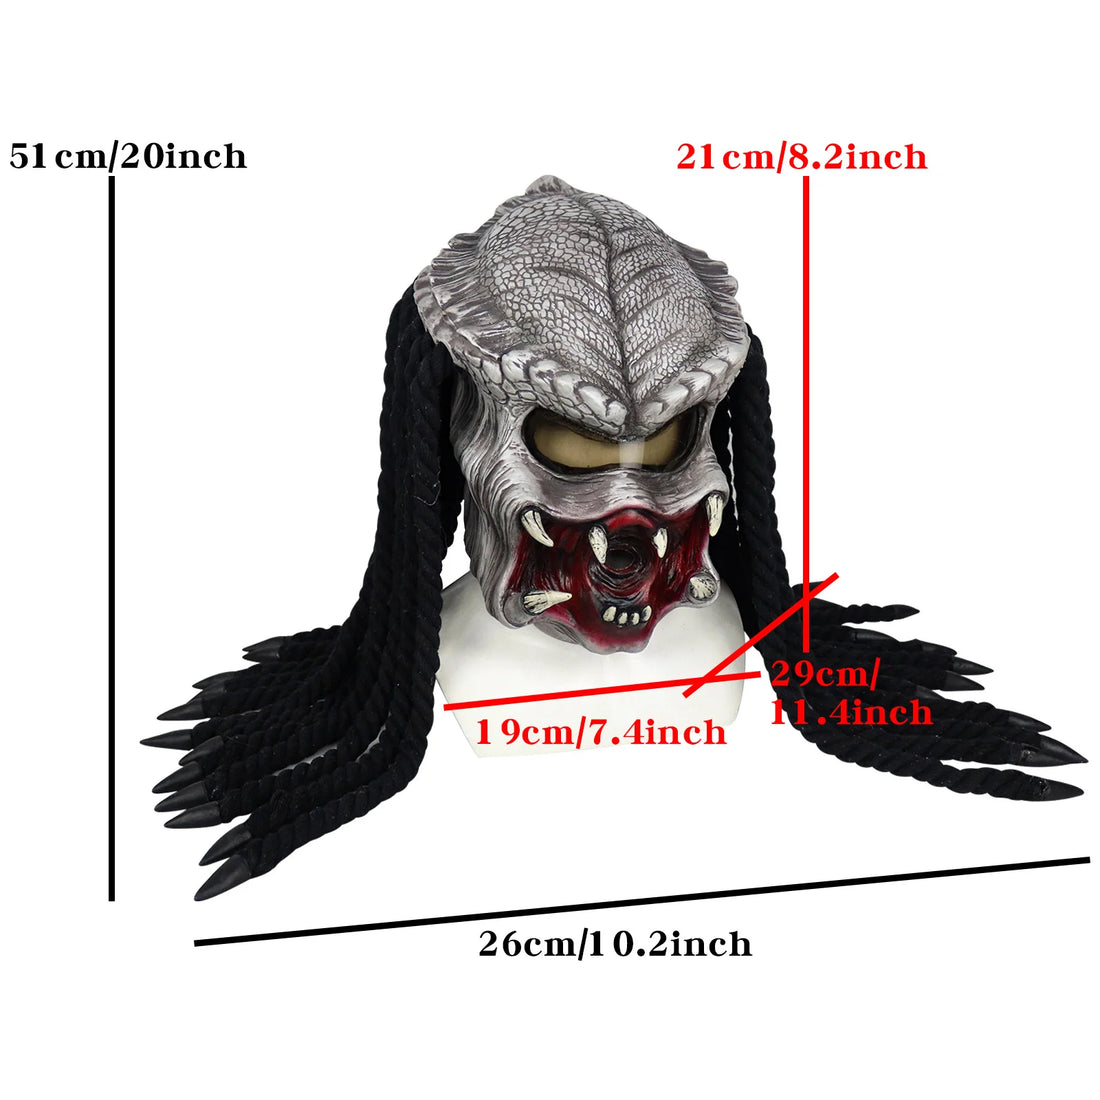 Bulex Movie Alien vs. Predator Mask Horrific Monster Masks Halloween Cosplay Props Average Size for Adults